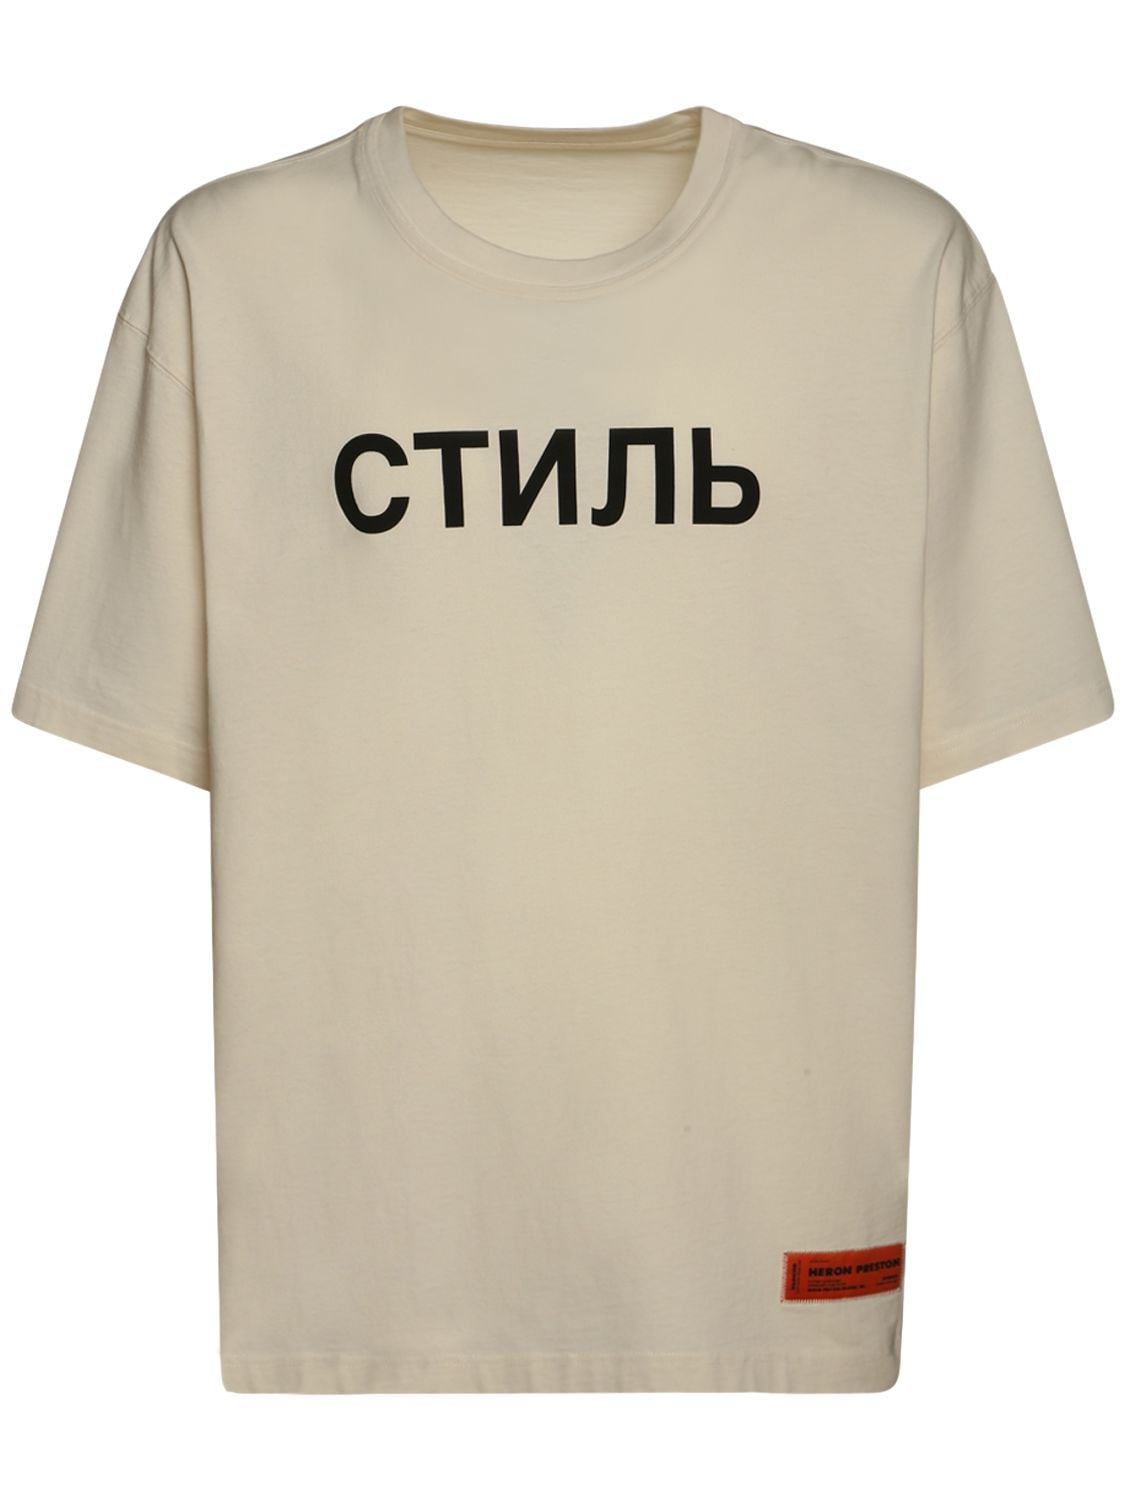 Hombre Camiseta Ctnmb De Jersey De Algodón Estampada -/ Xs - HERON PRESTON - Modalova